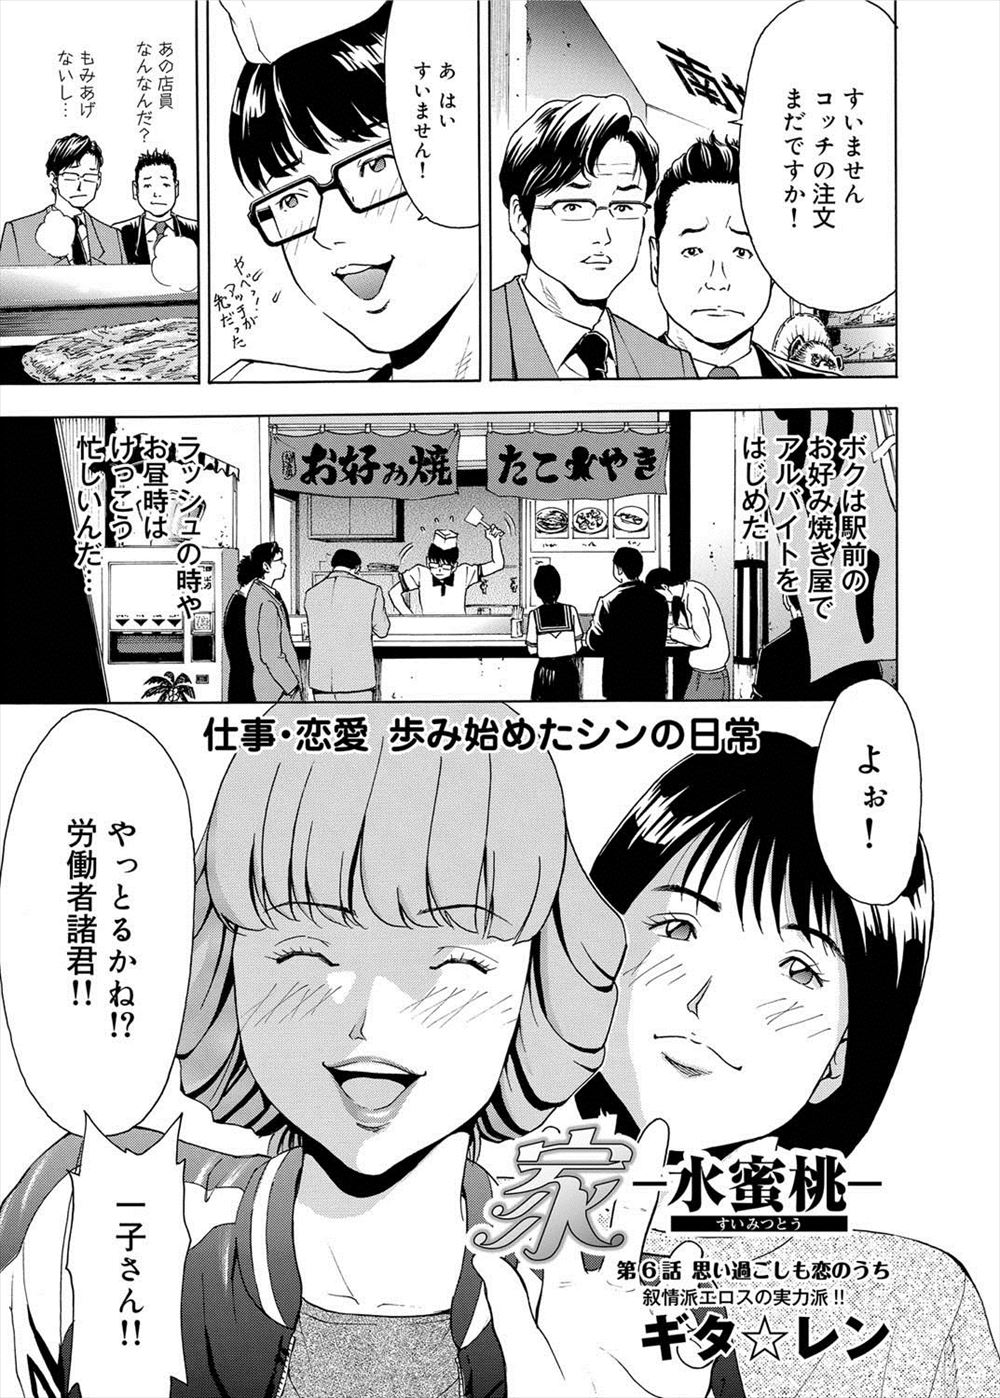 【エロ漫画】家出をして元ヤンの同級生と同棲を始めた男が、彼女の友達が遊びに来てるのに性欲が抑えきれず夜這いセックスｗｗｗ